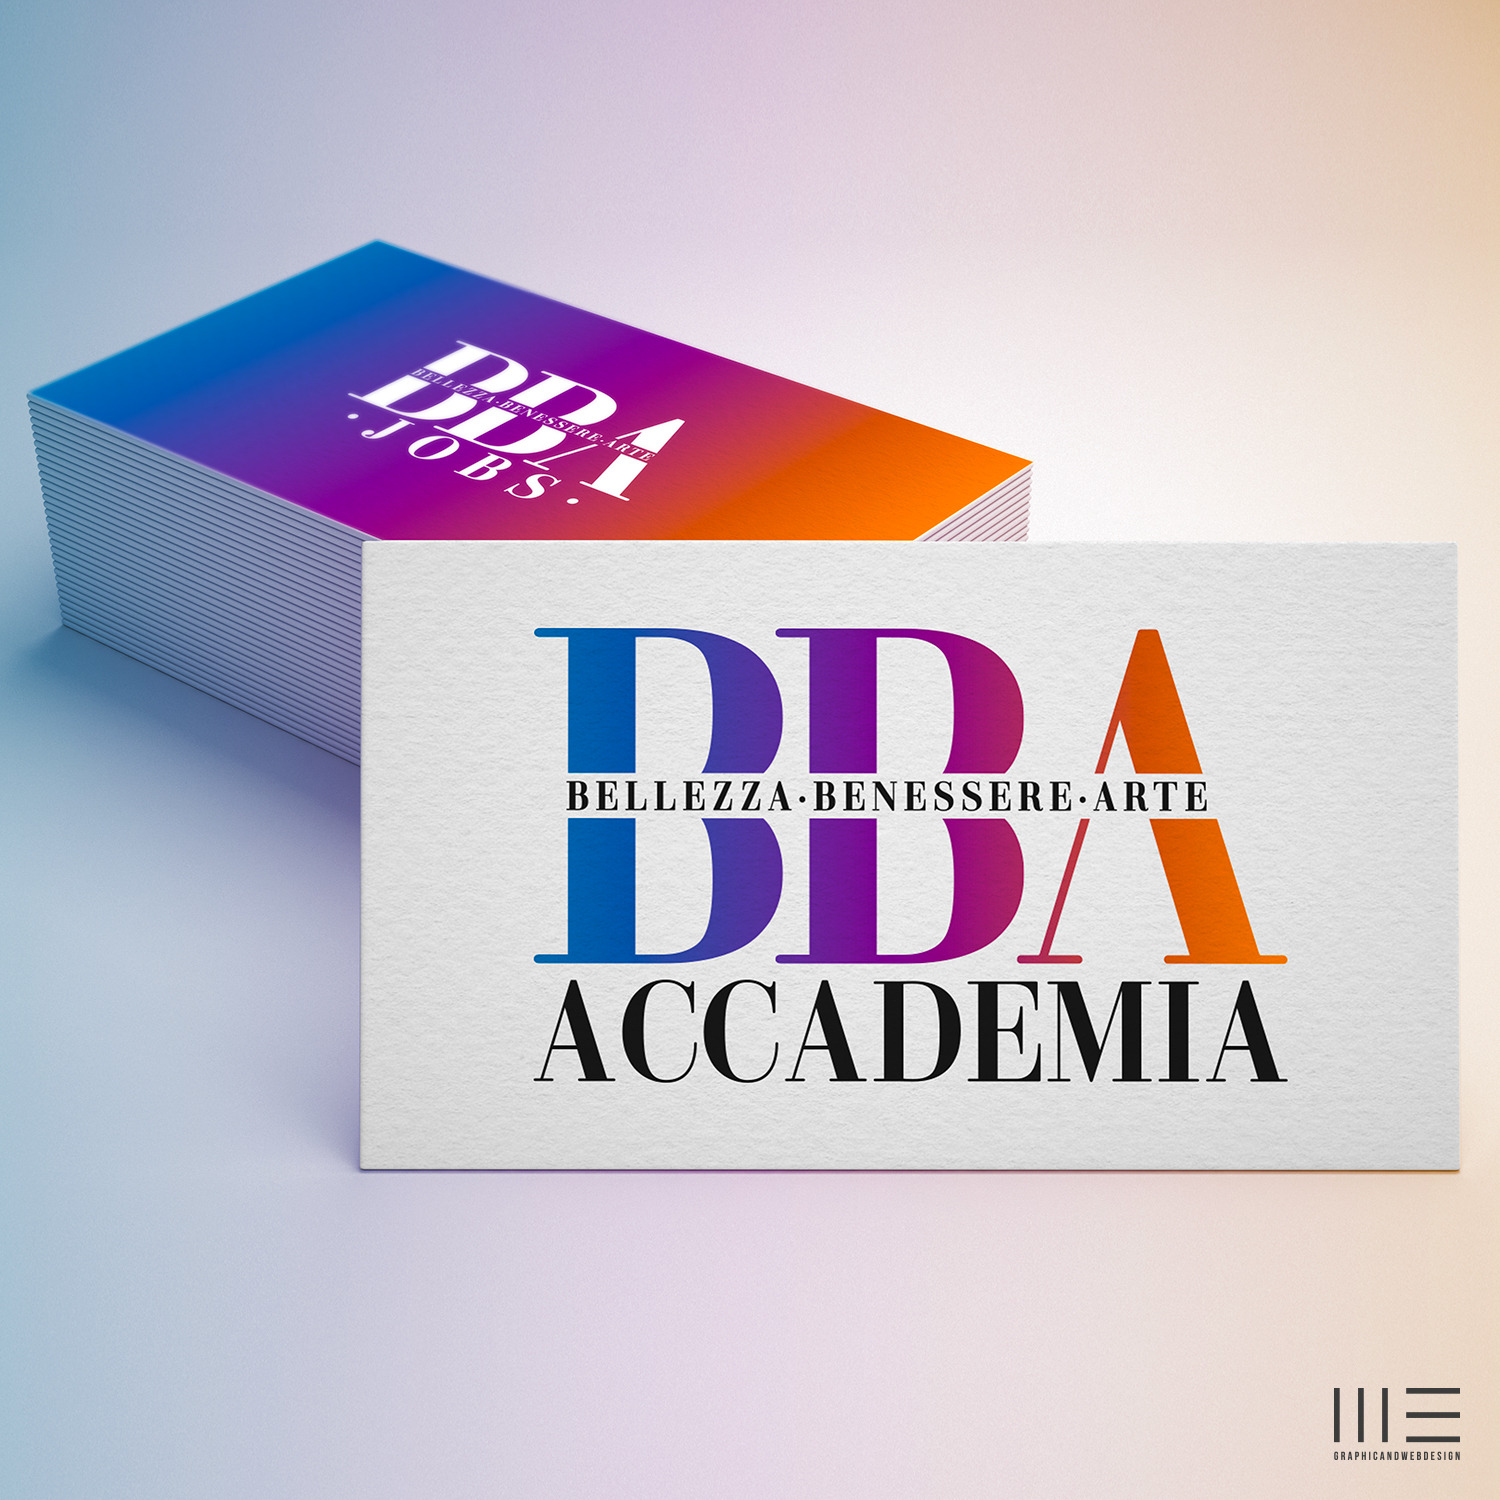 Accademia BBA - logo e biglietto da visita